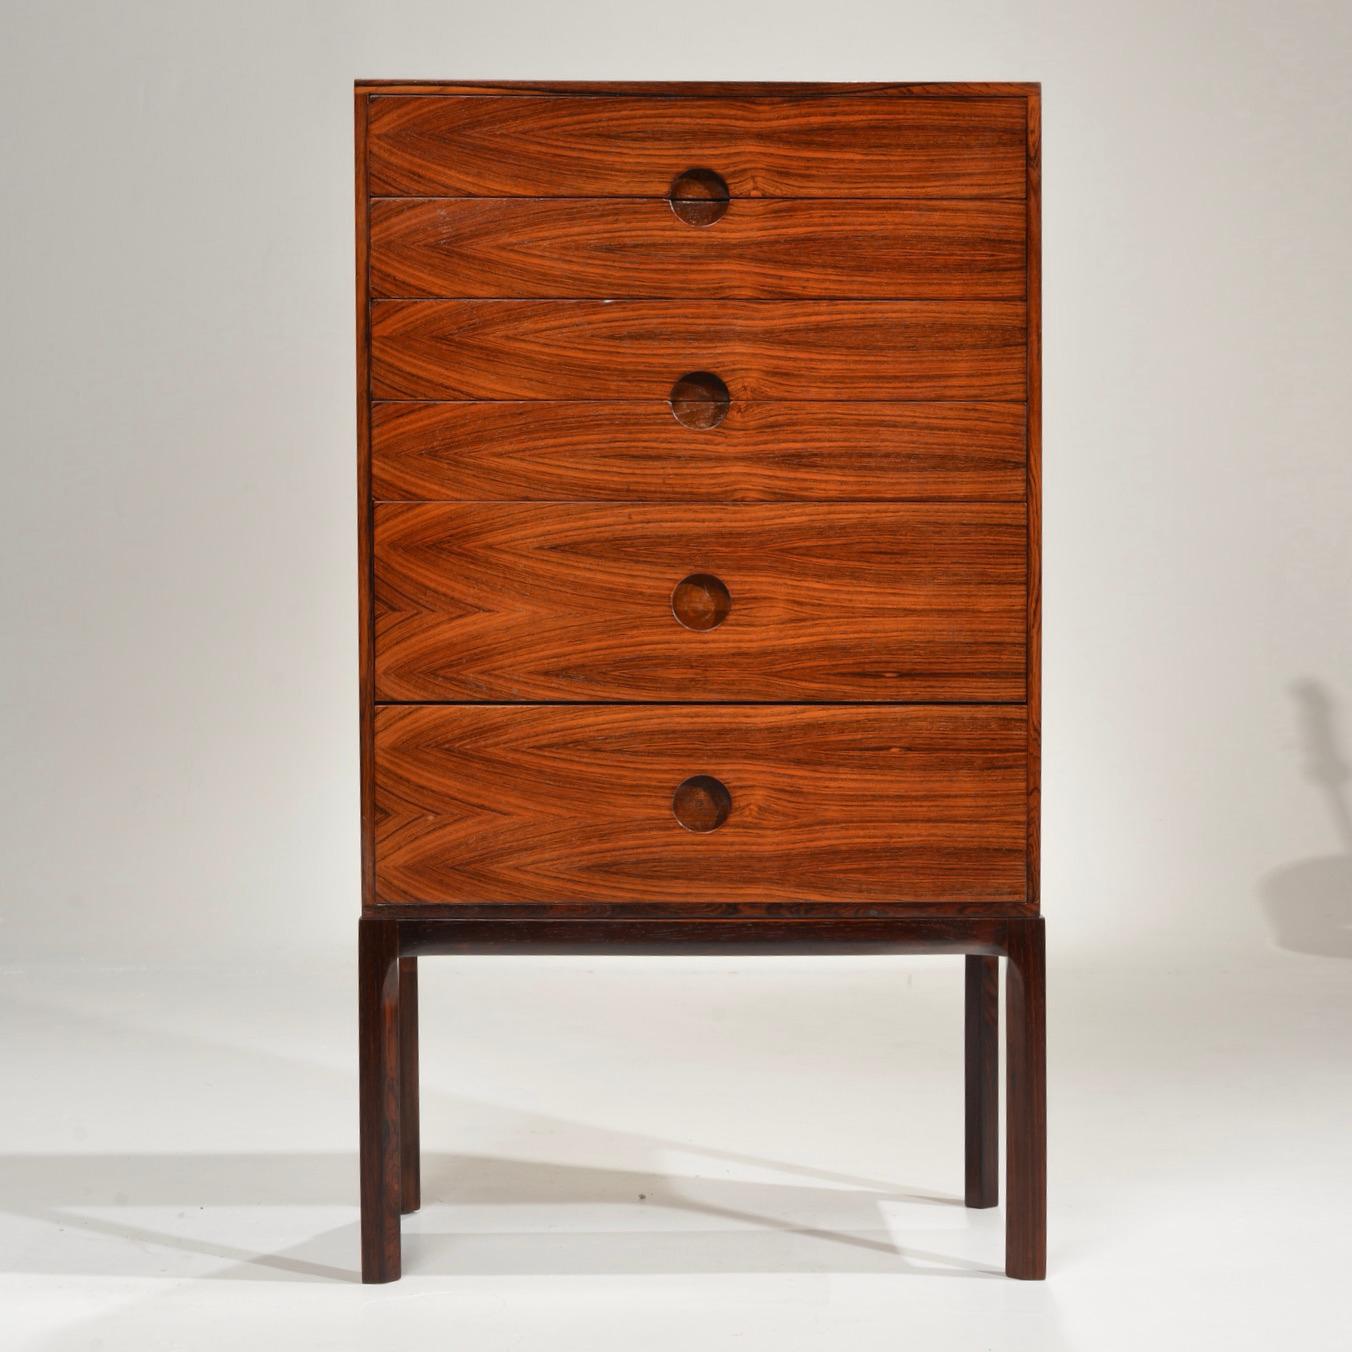 Rare Kai Kristiansen for Aksel Kjersgaard rosewood chest of drawers model 385, Denmark, c1960.